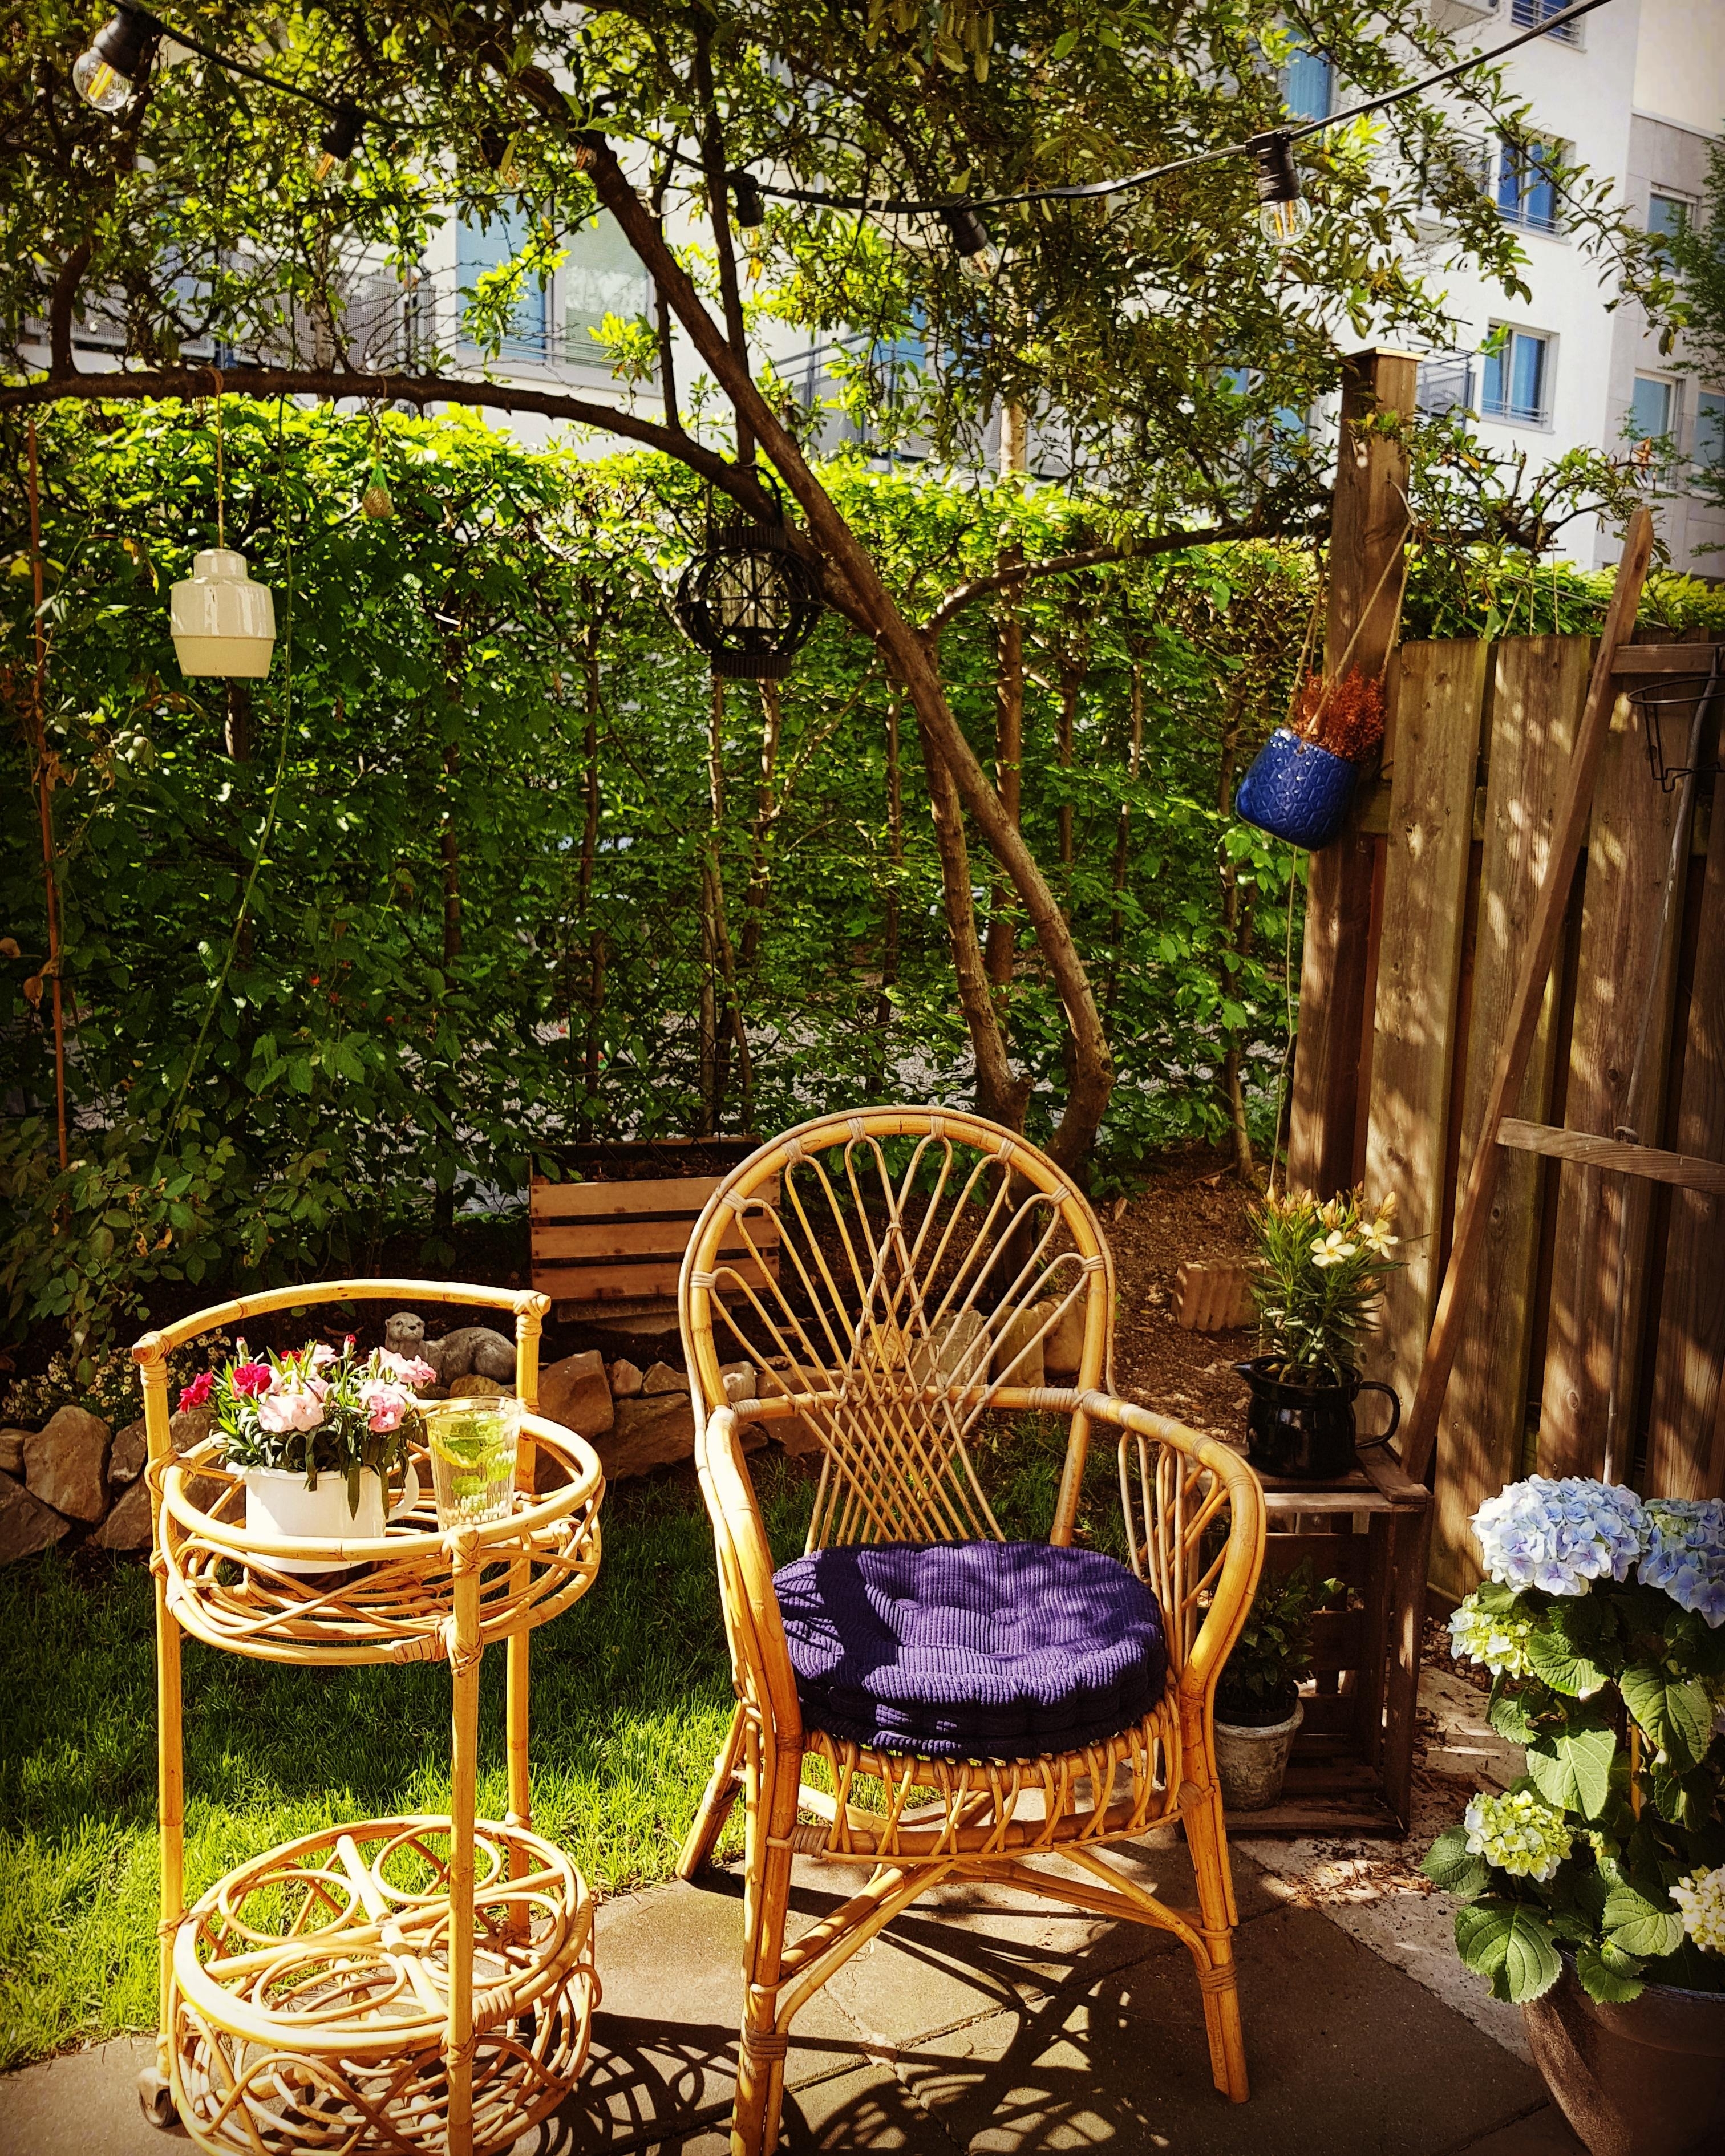 Gartenzeit
#gardentime #summerinthecity #rattanlove #garden #interior #plants #summer #rattansessel